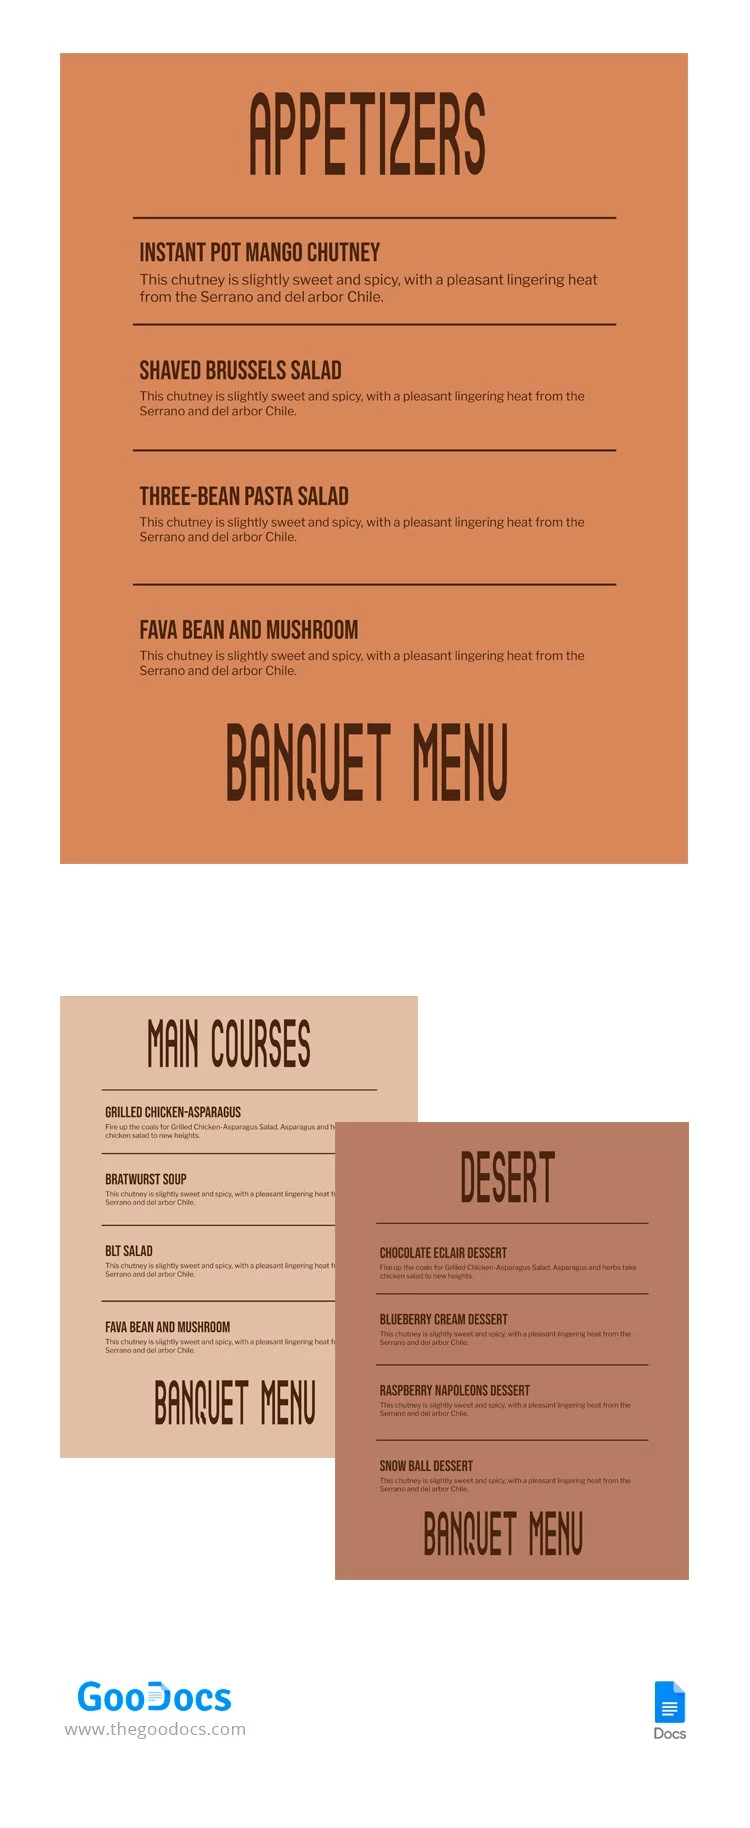 Menú del restaurante Banquet - free Google Docs Template - 10064444